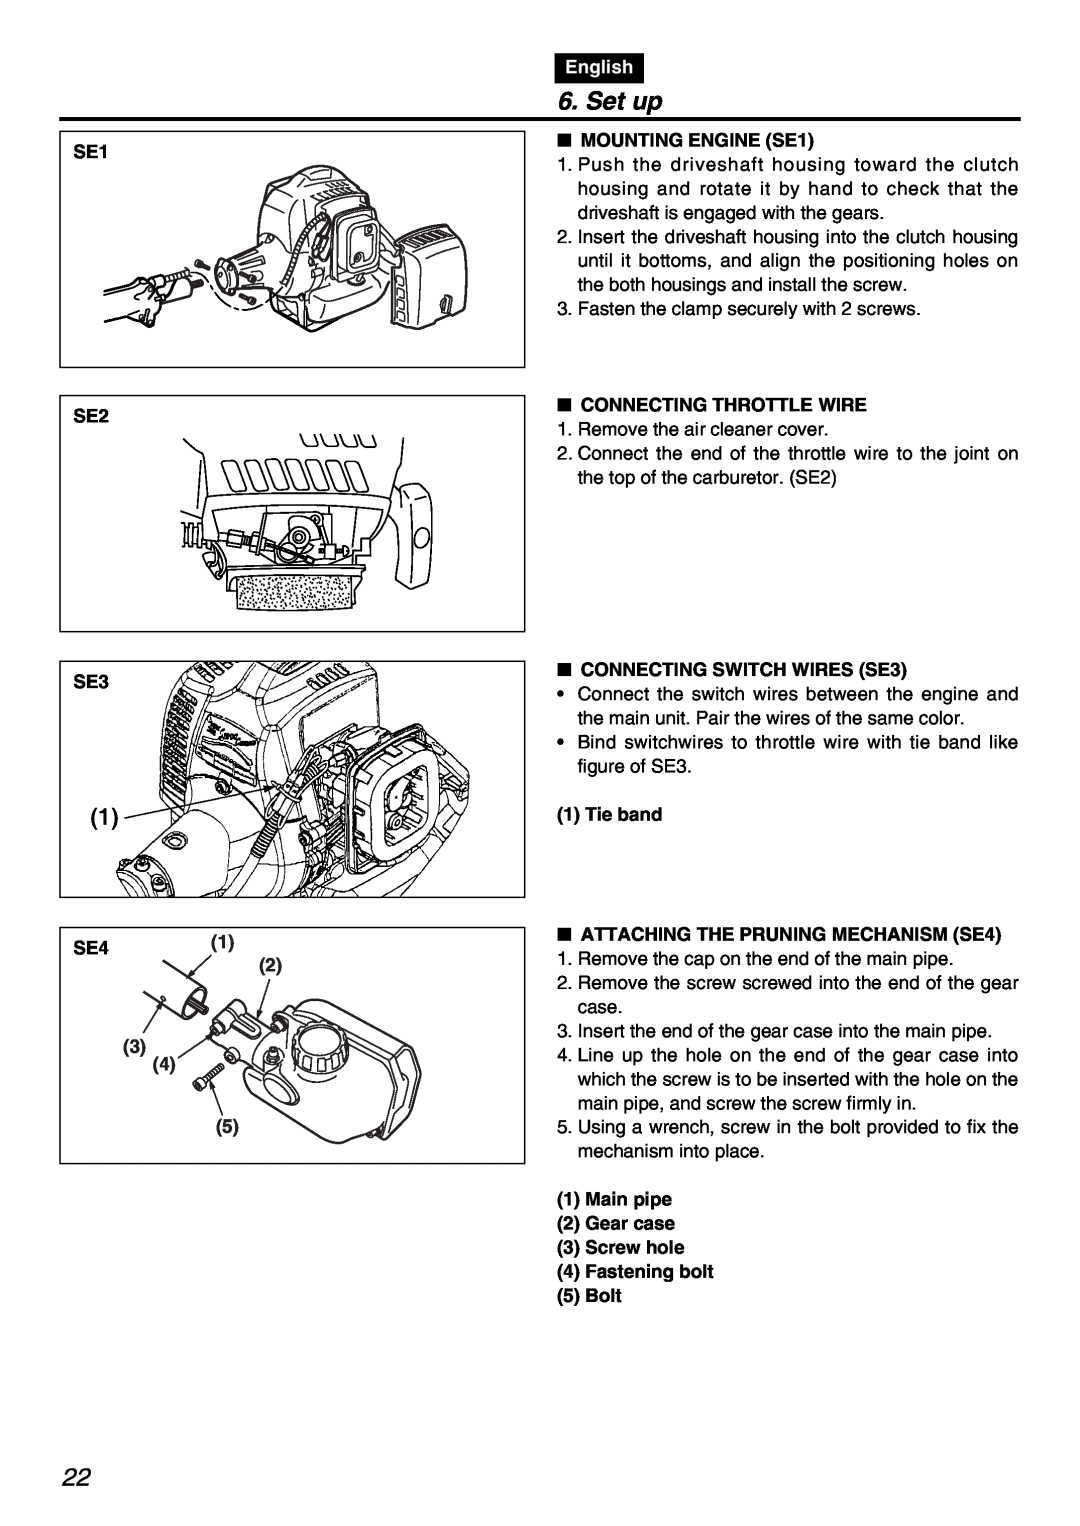 Zenoah PSZ2401 manual Set up, English, SE1 SE2 SE3 SE41, MOUNTING ENGINE SE1, Connecting Throttle Wire 